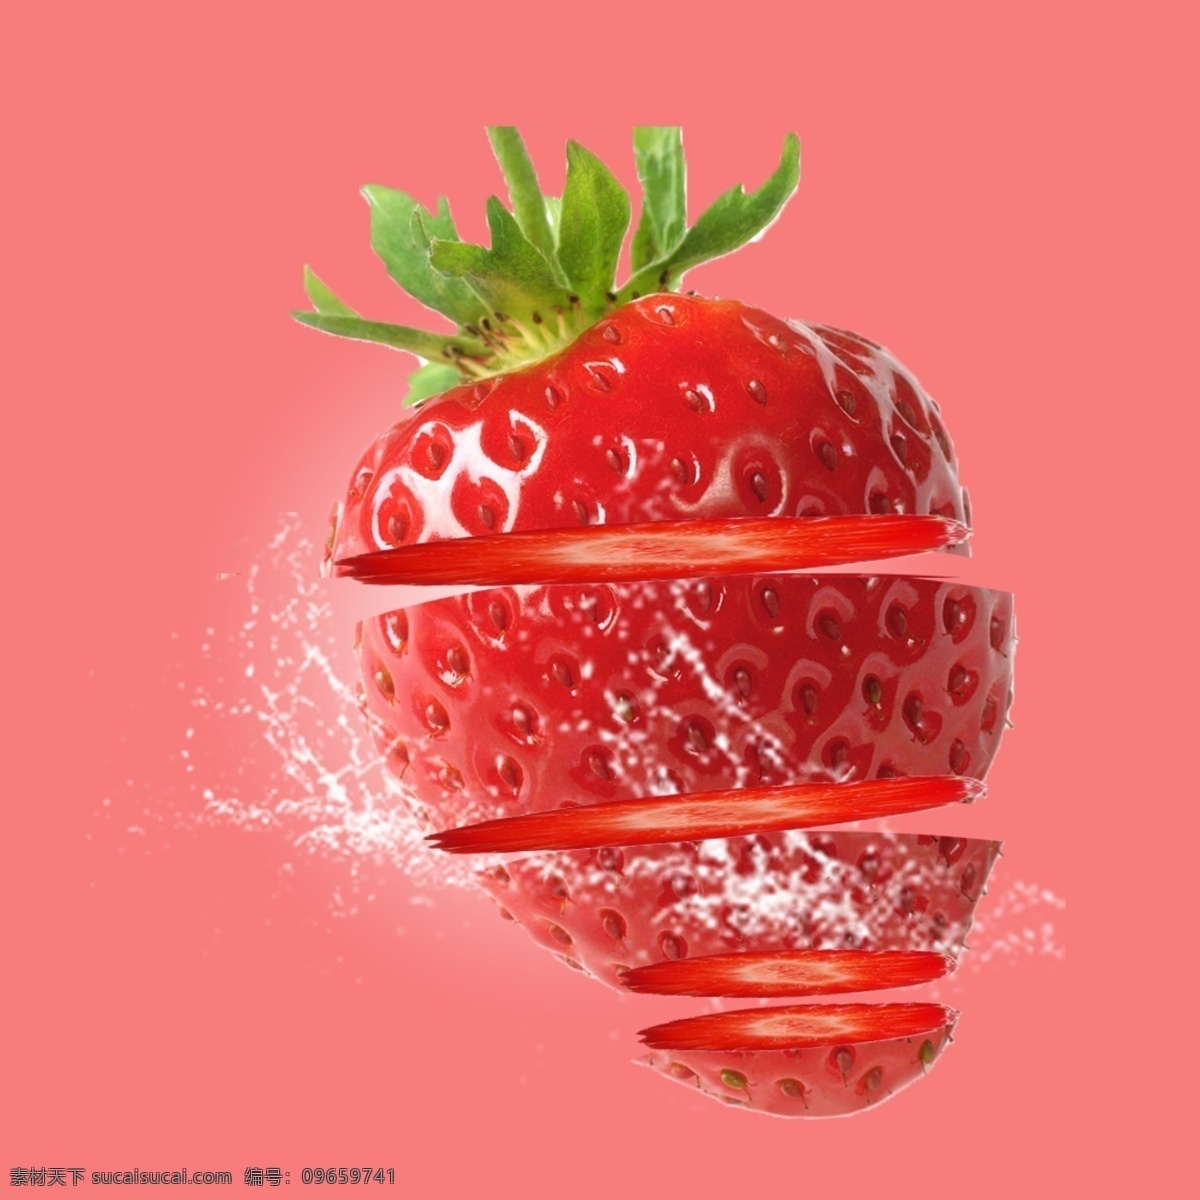 水果草莓图片 草莓花 红草莓 奶油草莓 草莓地 摘草莓 甜草莓 一串草莓 大片草莓 草莓叶子 花草集 生物世界 水果